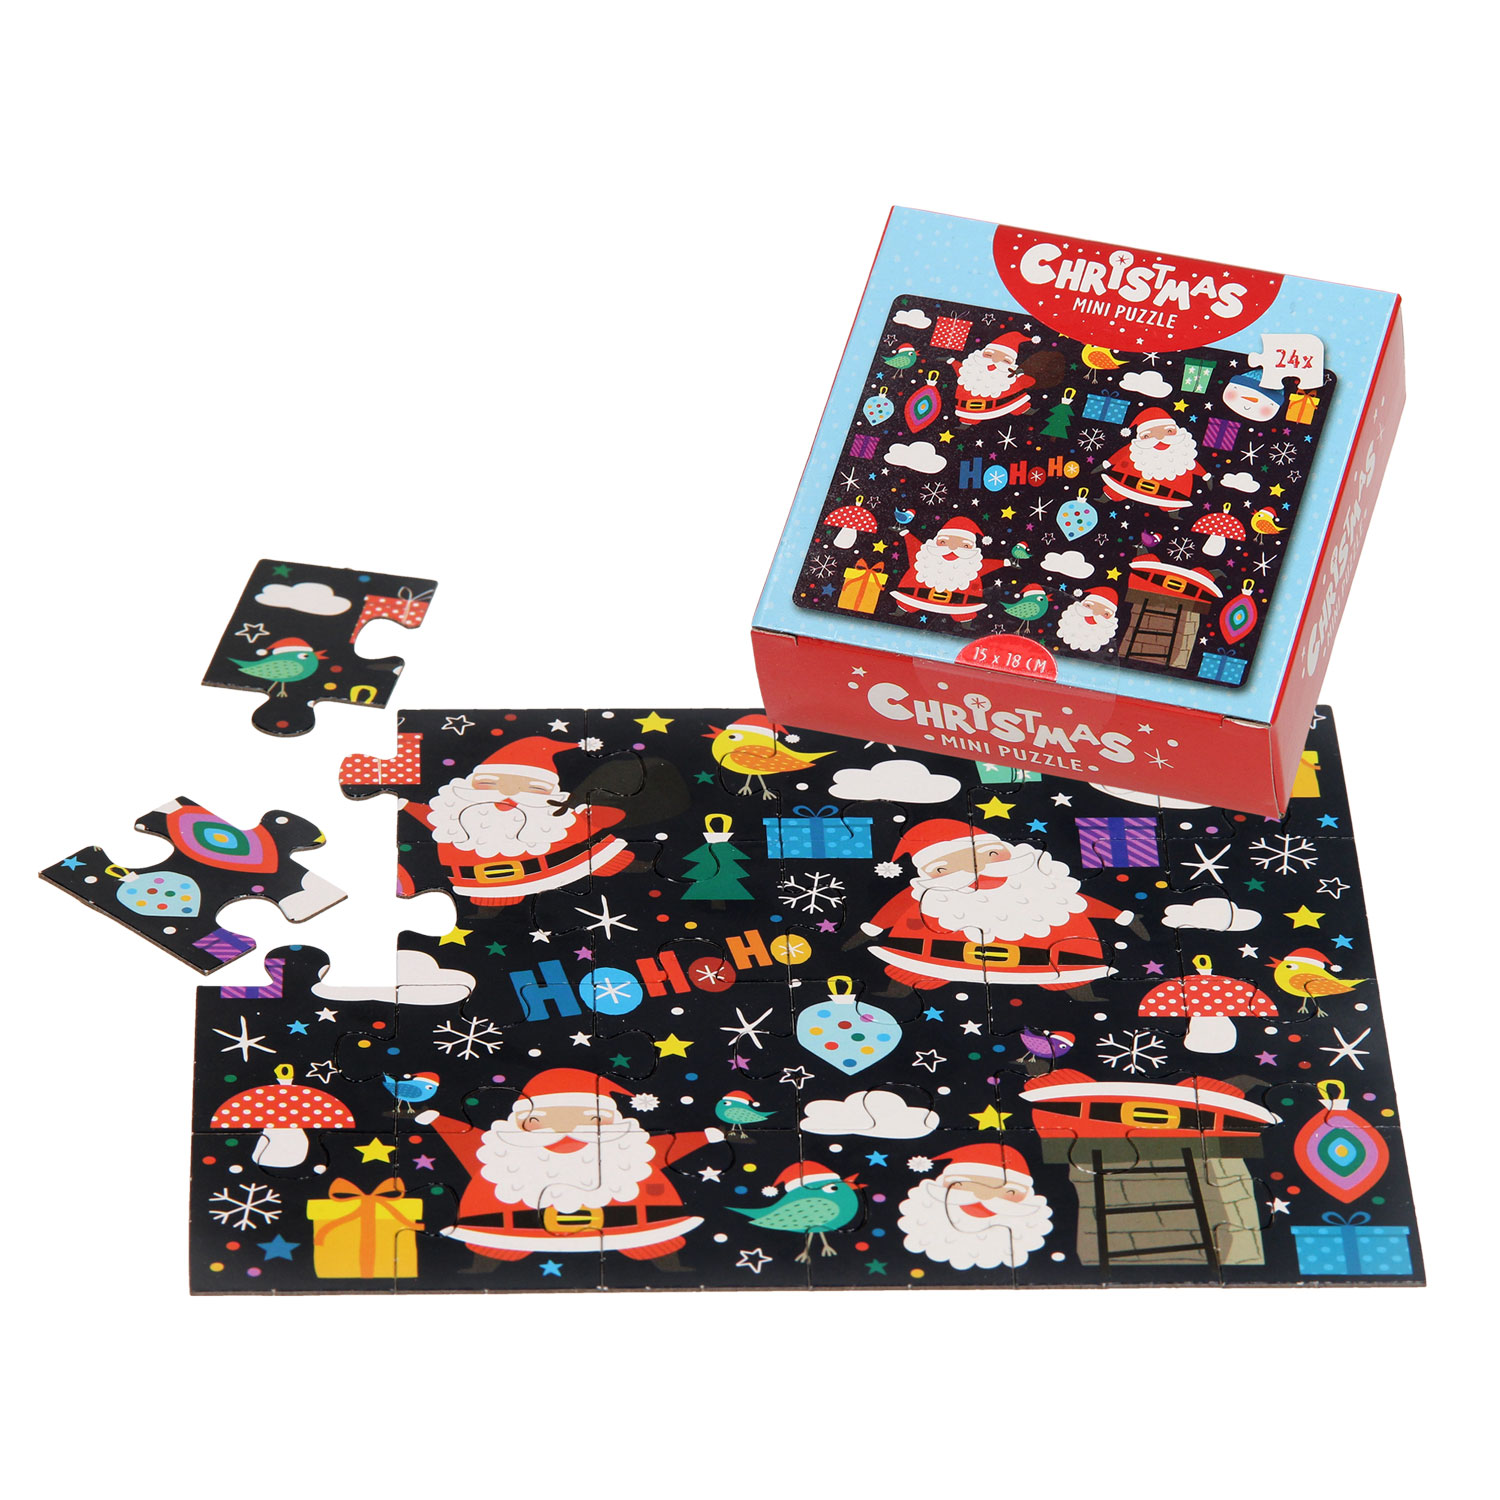 Vereniging invoegen Saga Mini Puzzel Kerst, 24st. online kopen? | Lobbes Speelgoed